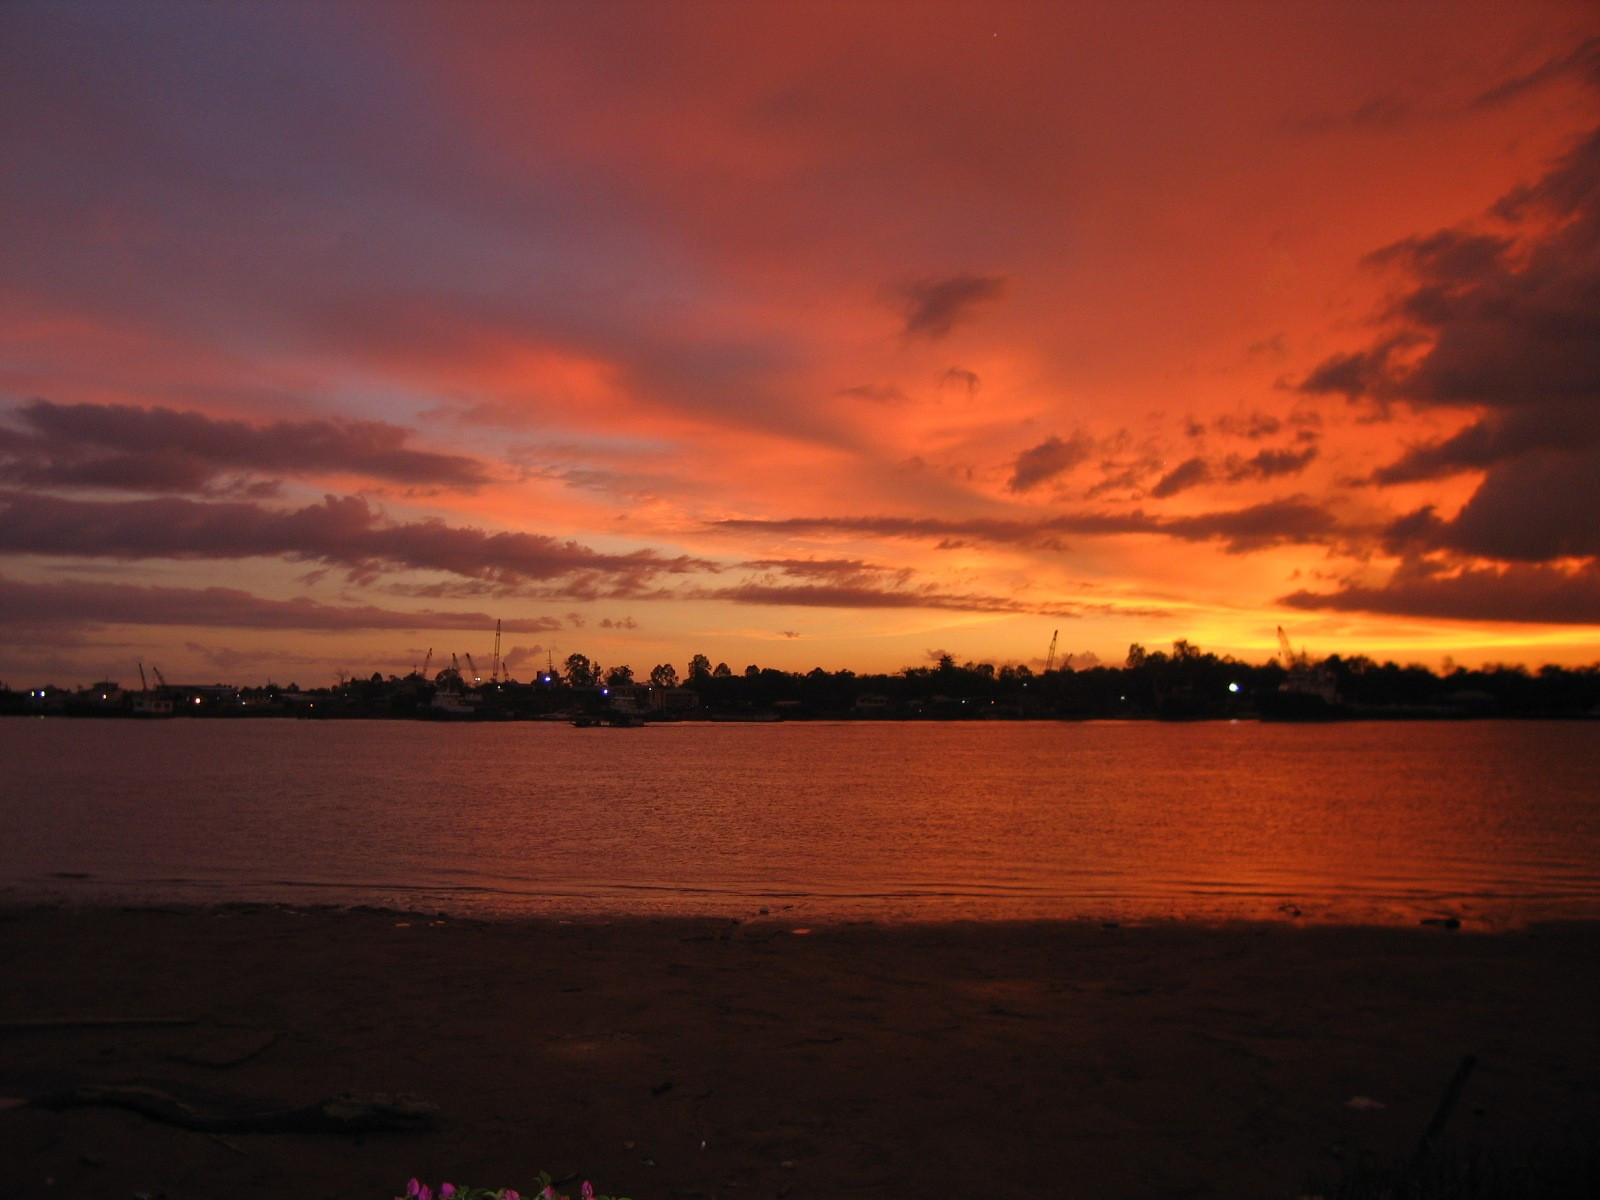 Sunset over Rajang River at Sibu, Sarawak